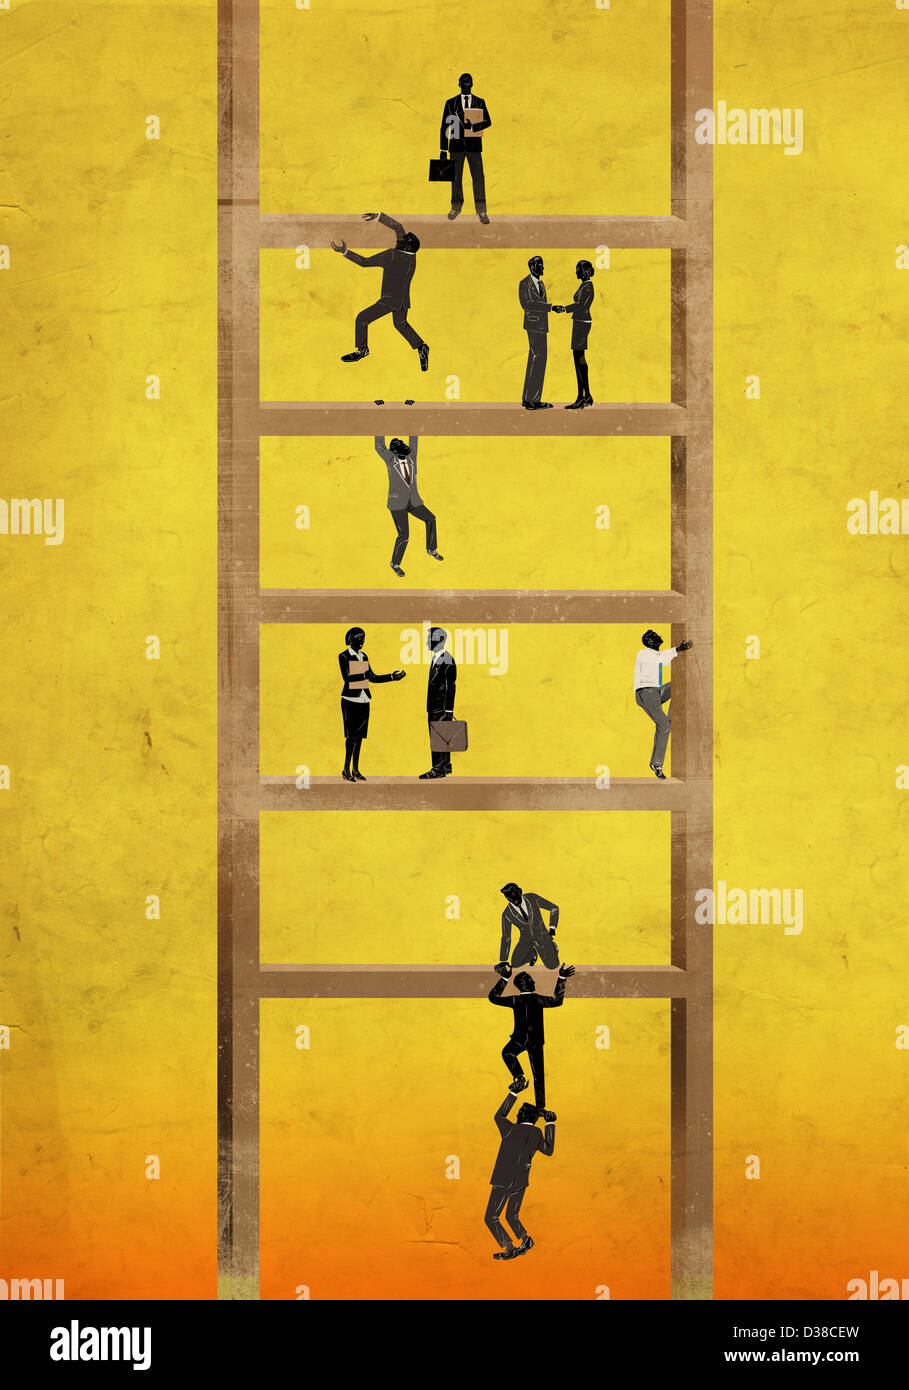 Anschauliches Bild von Geschäftsleuten auf Leiter, Hierarchie darstellt Stockfoto